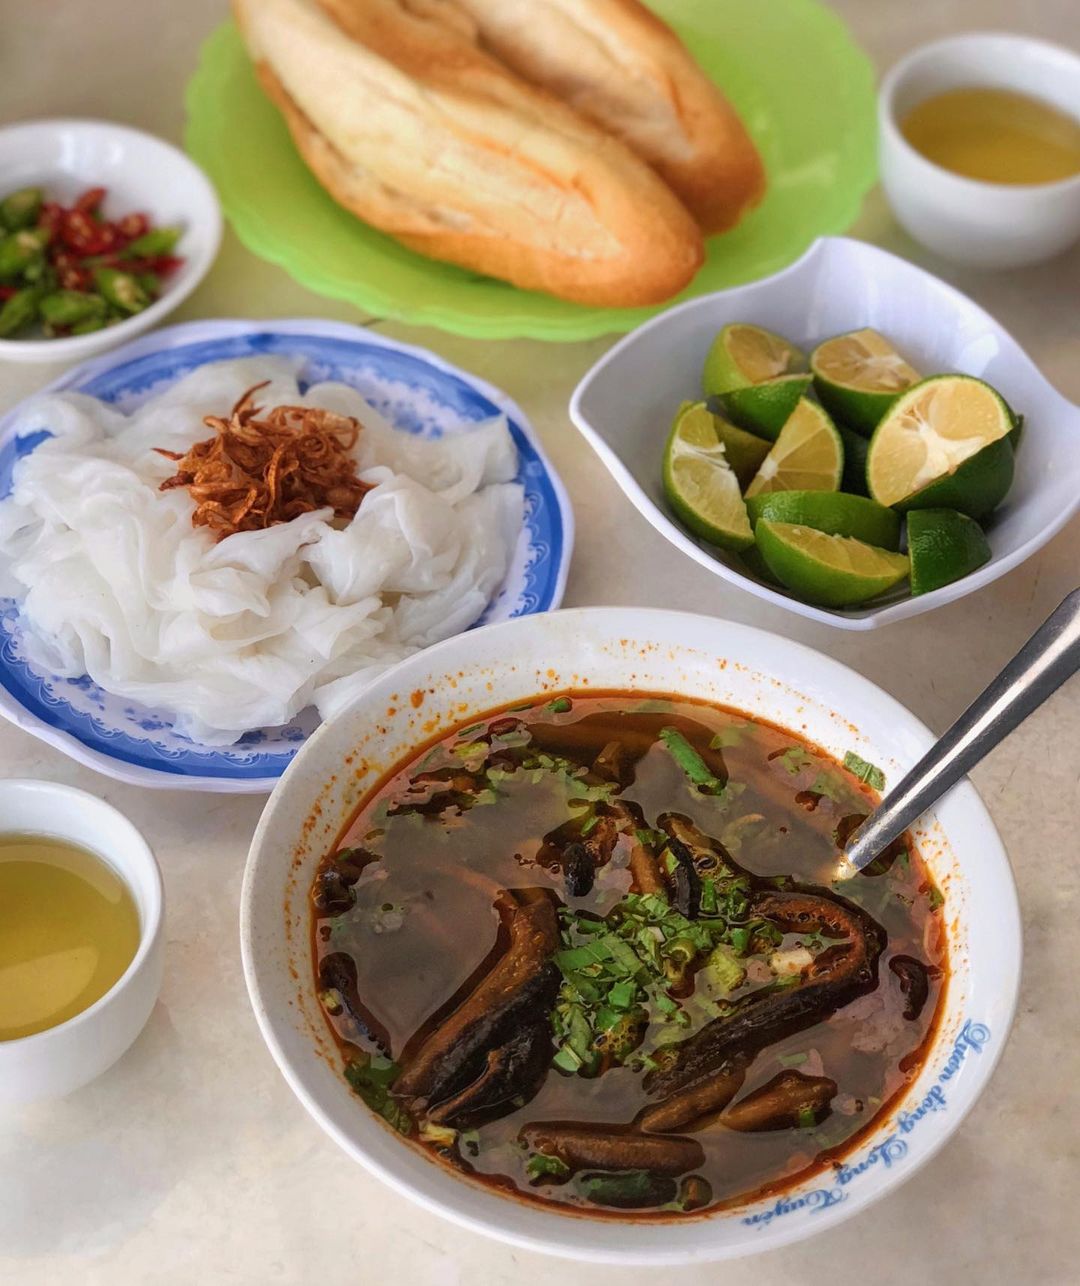 Súp lươn là đặc sản khiến nhiều thực khách nào cũng phải mê mẩn ở Nghệ An. - Ảnh: nomzbysue